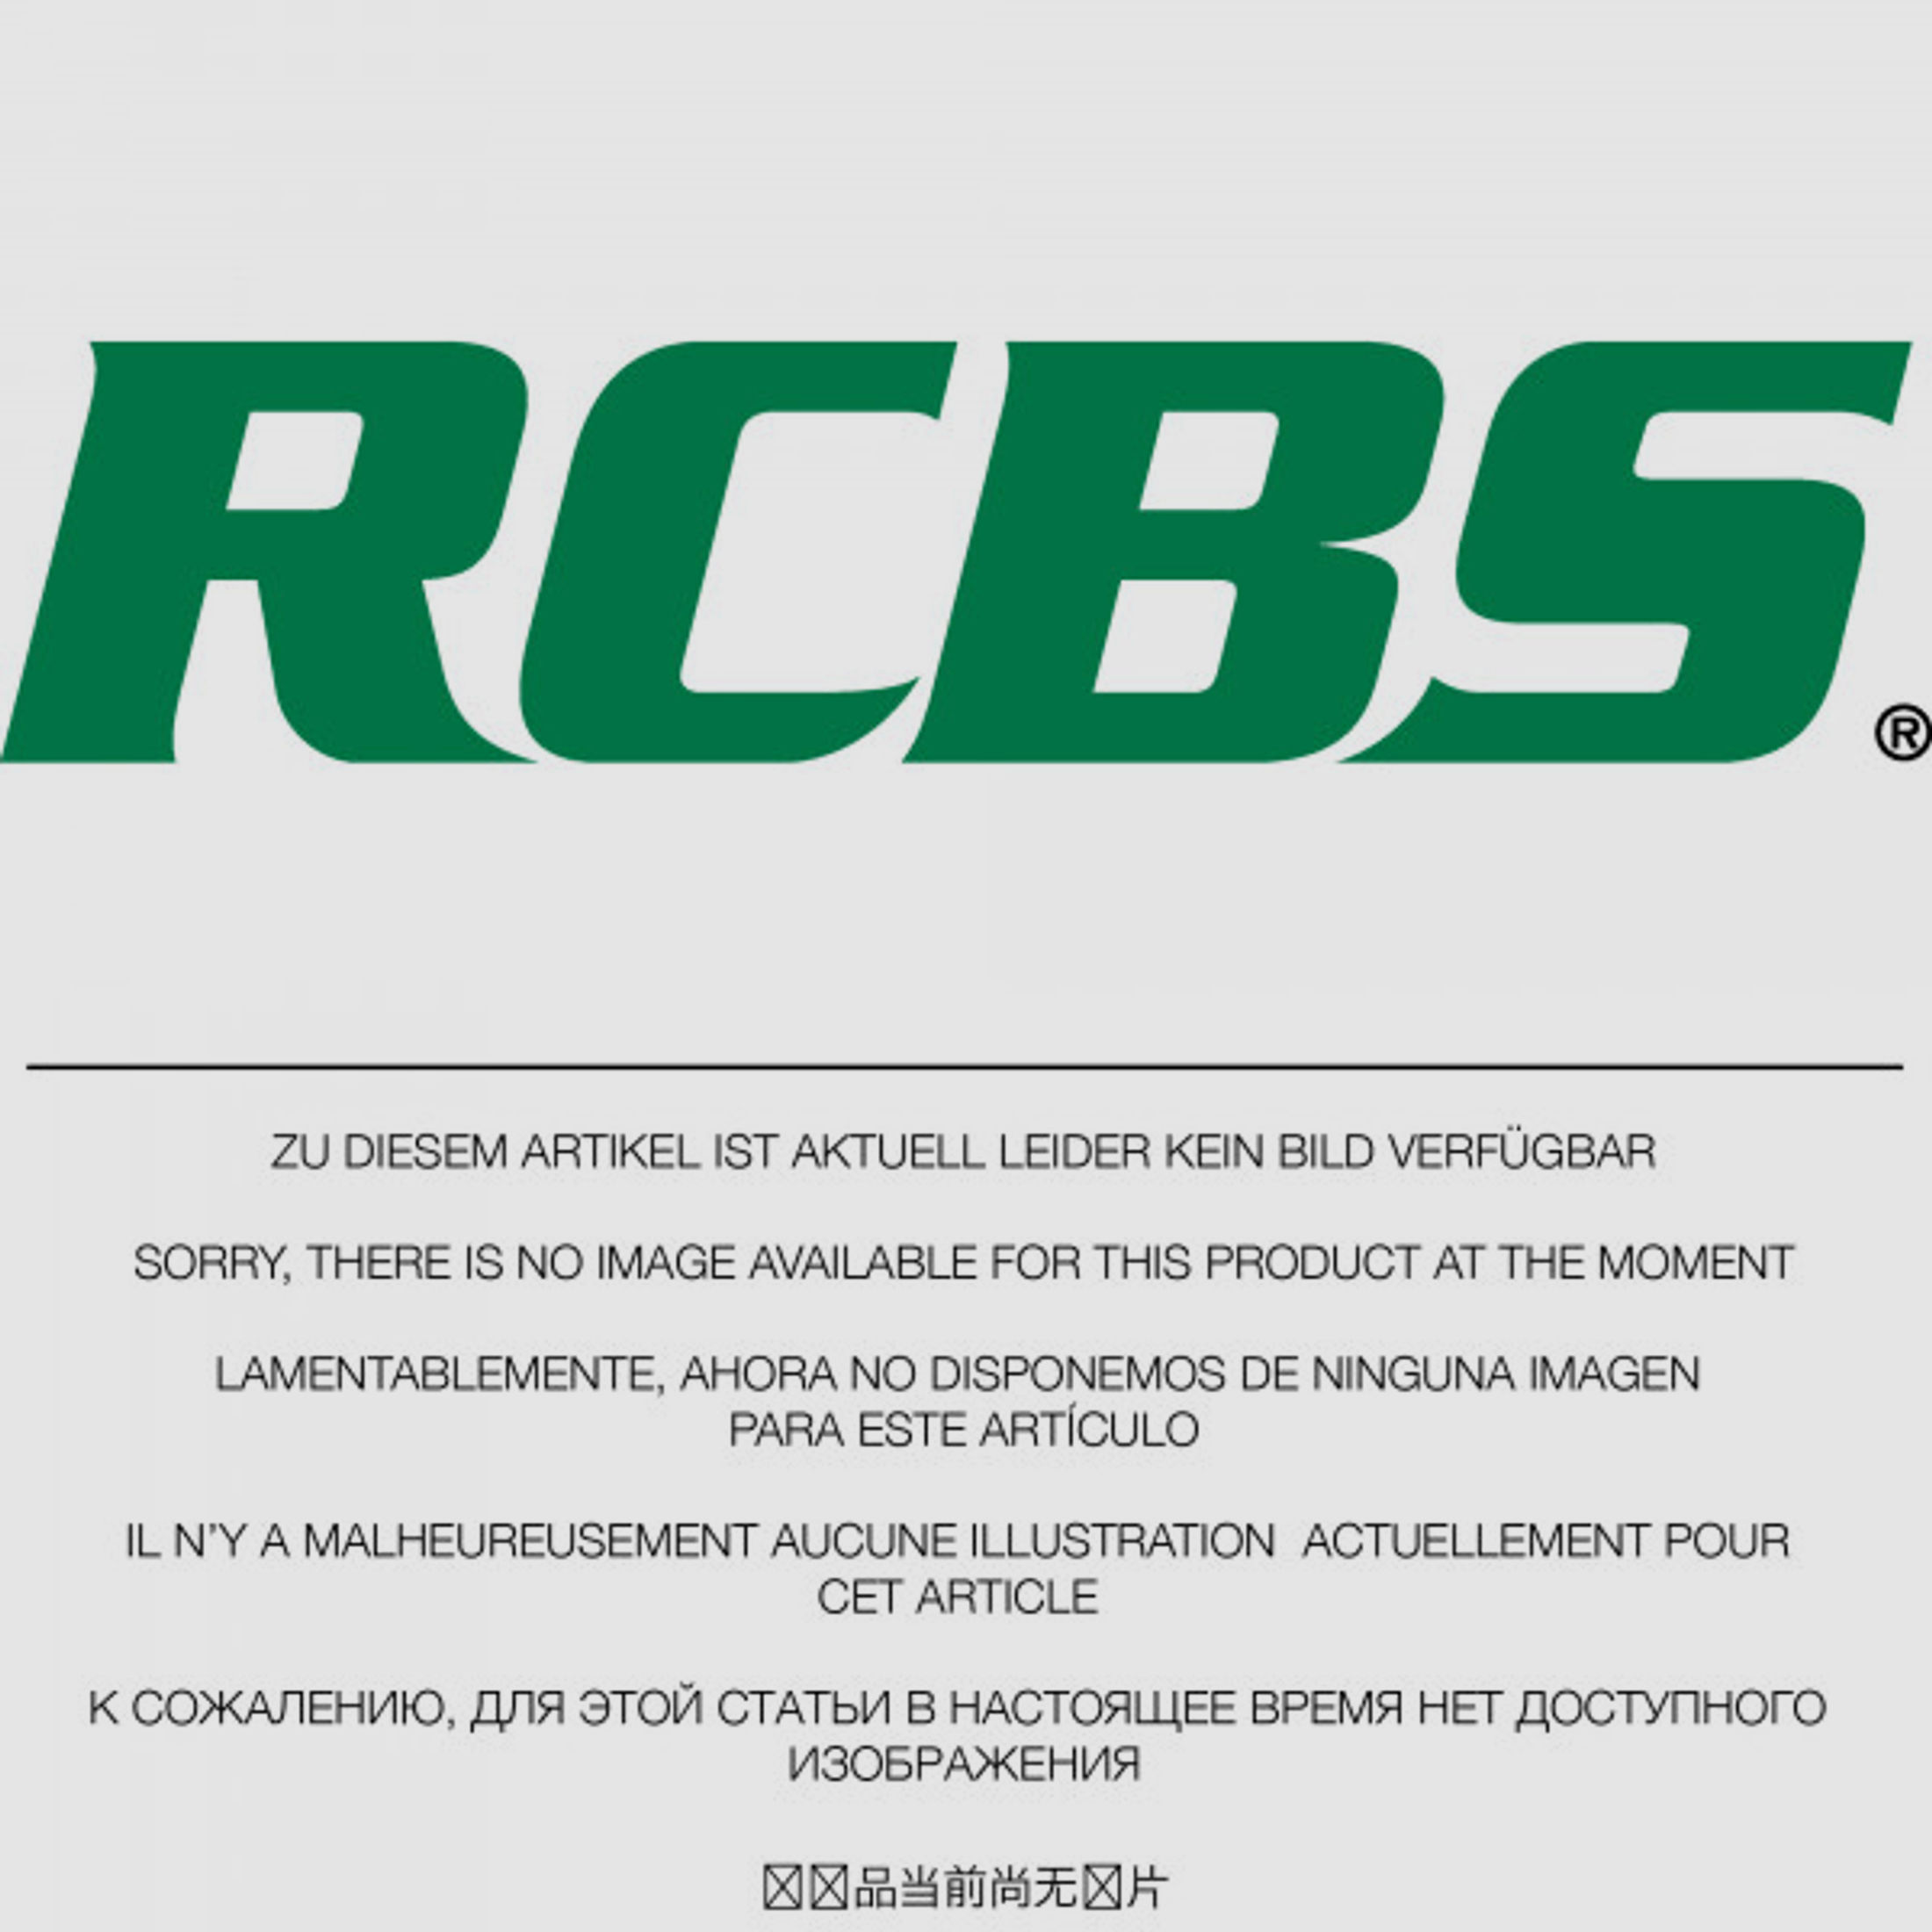 RCBS Lube-A-Matic Top Punch Geschoss Setzstempel Nr. 631 #85631